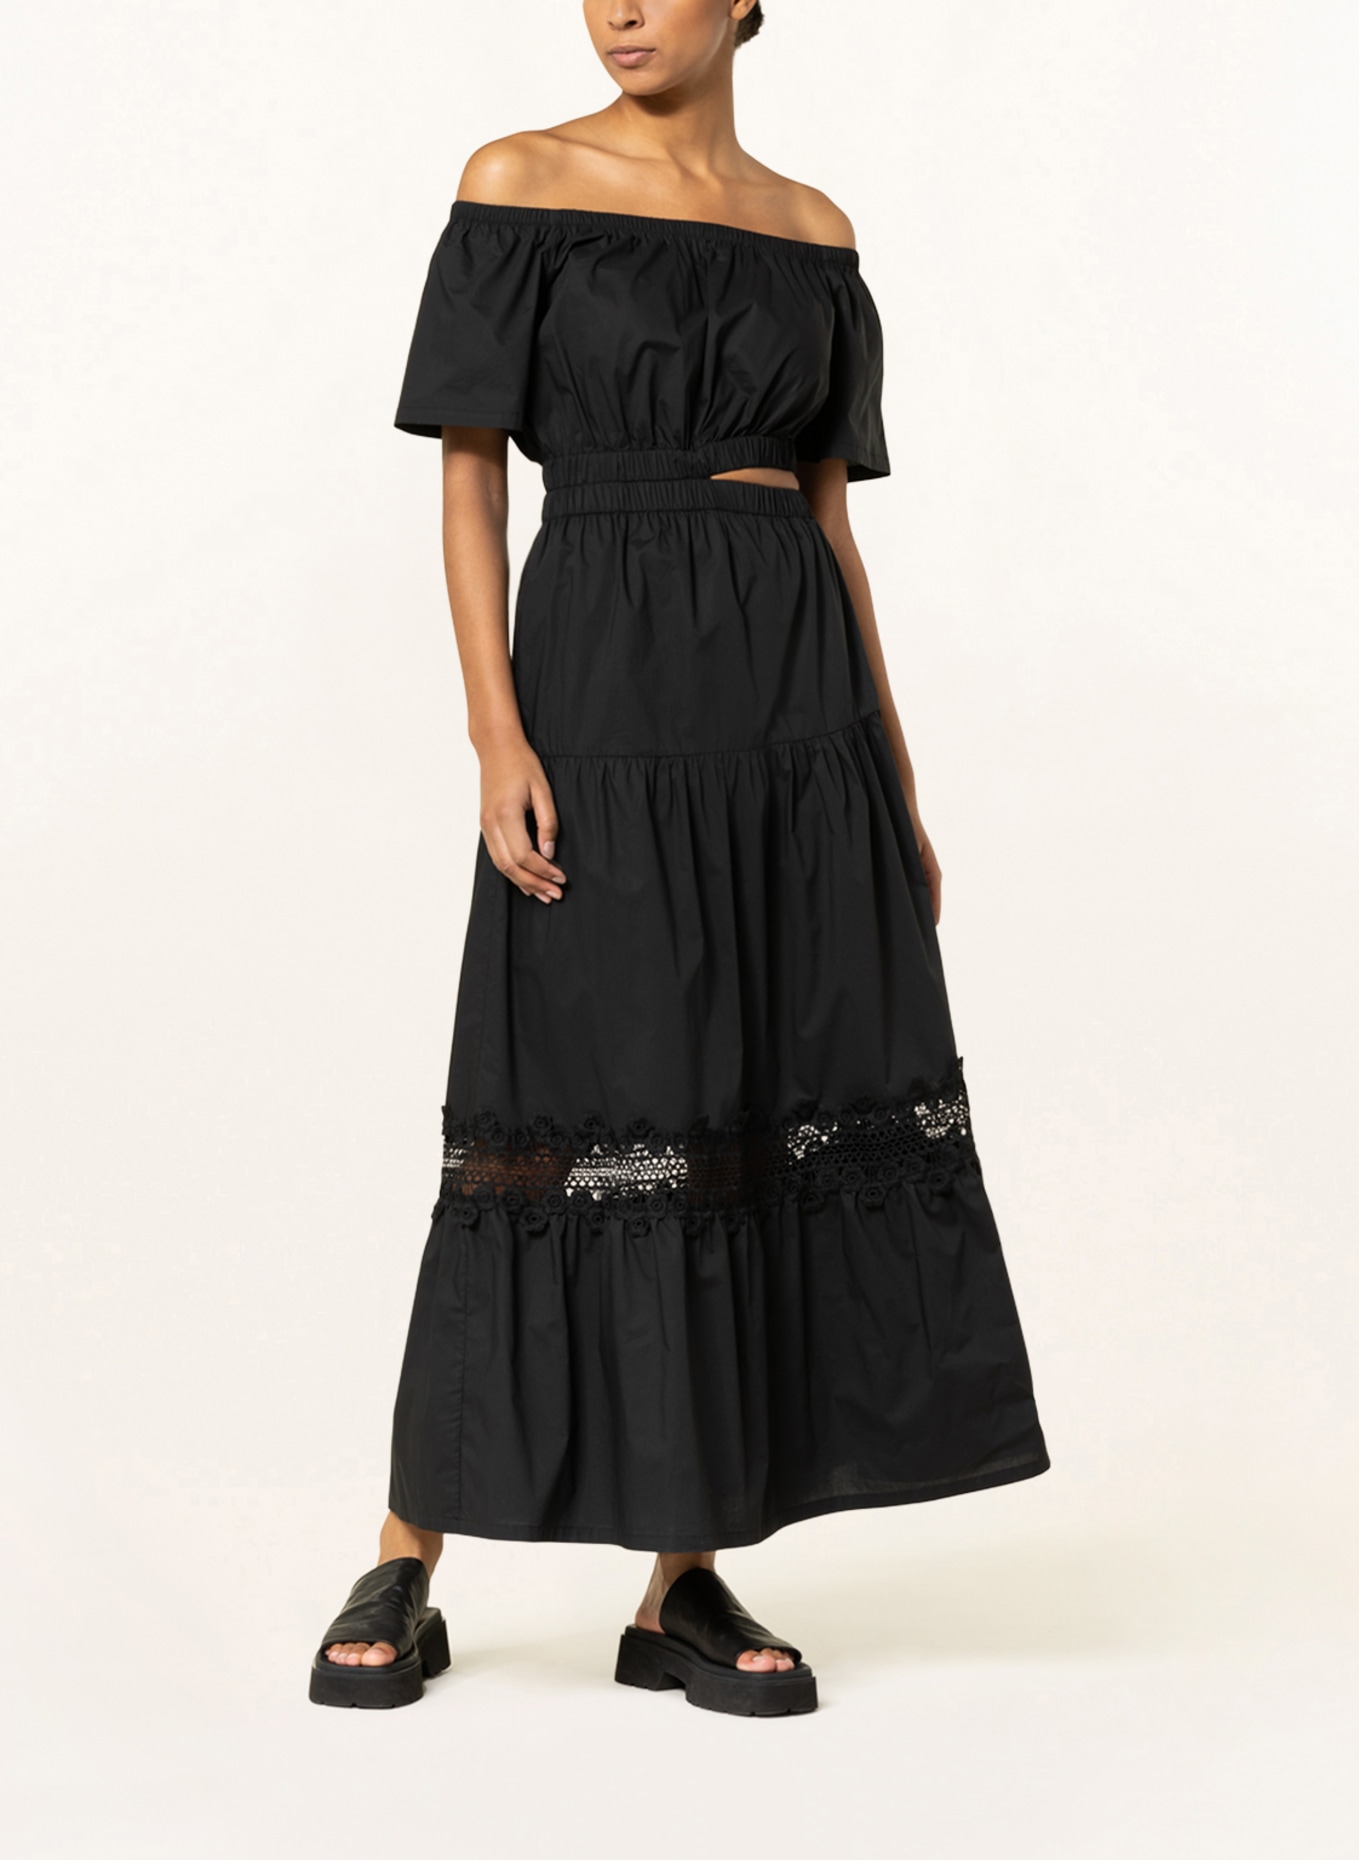 [Großer Ausverkauf nur jetzt] LIU JO Off-shoulder dress in black